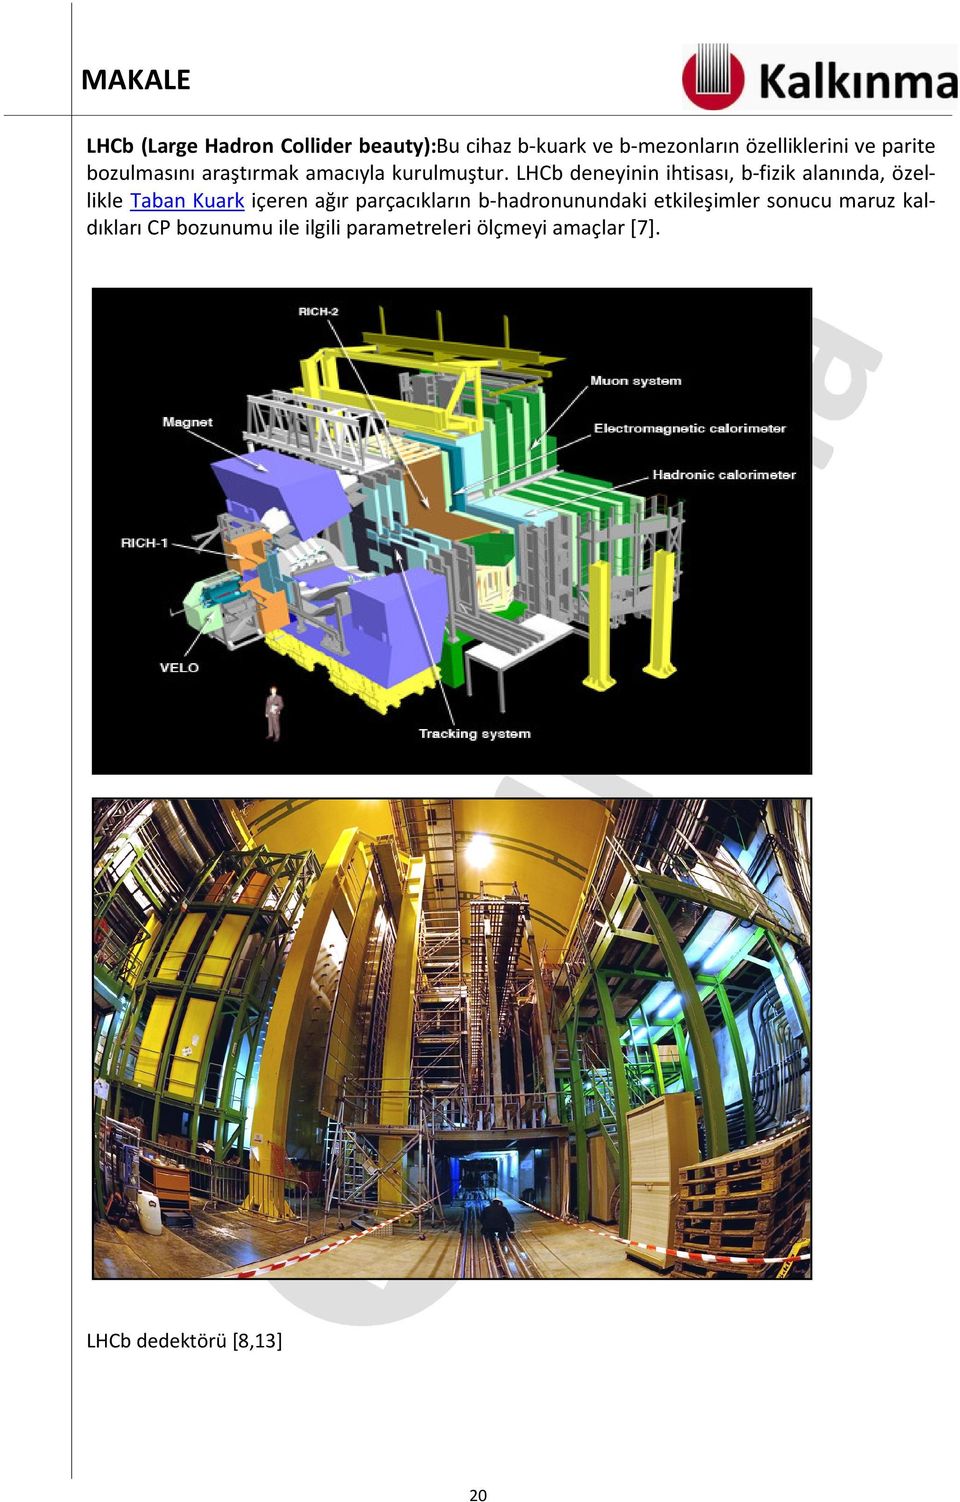 LHCb deneyinin ihtisası, b-fizik alanında, özellikle Taban Kuark içeren ağır parçacıkların